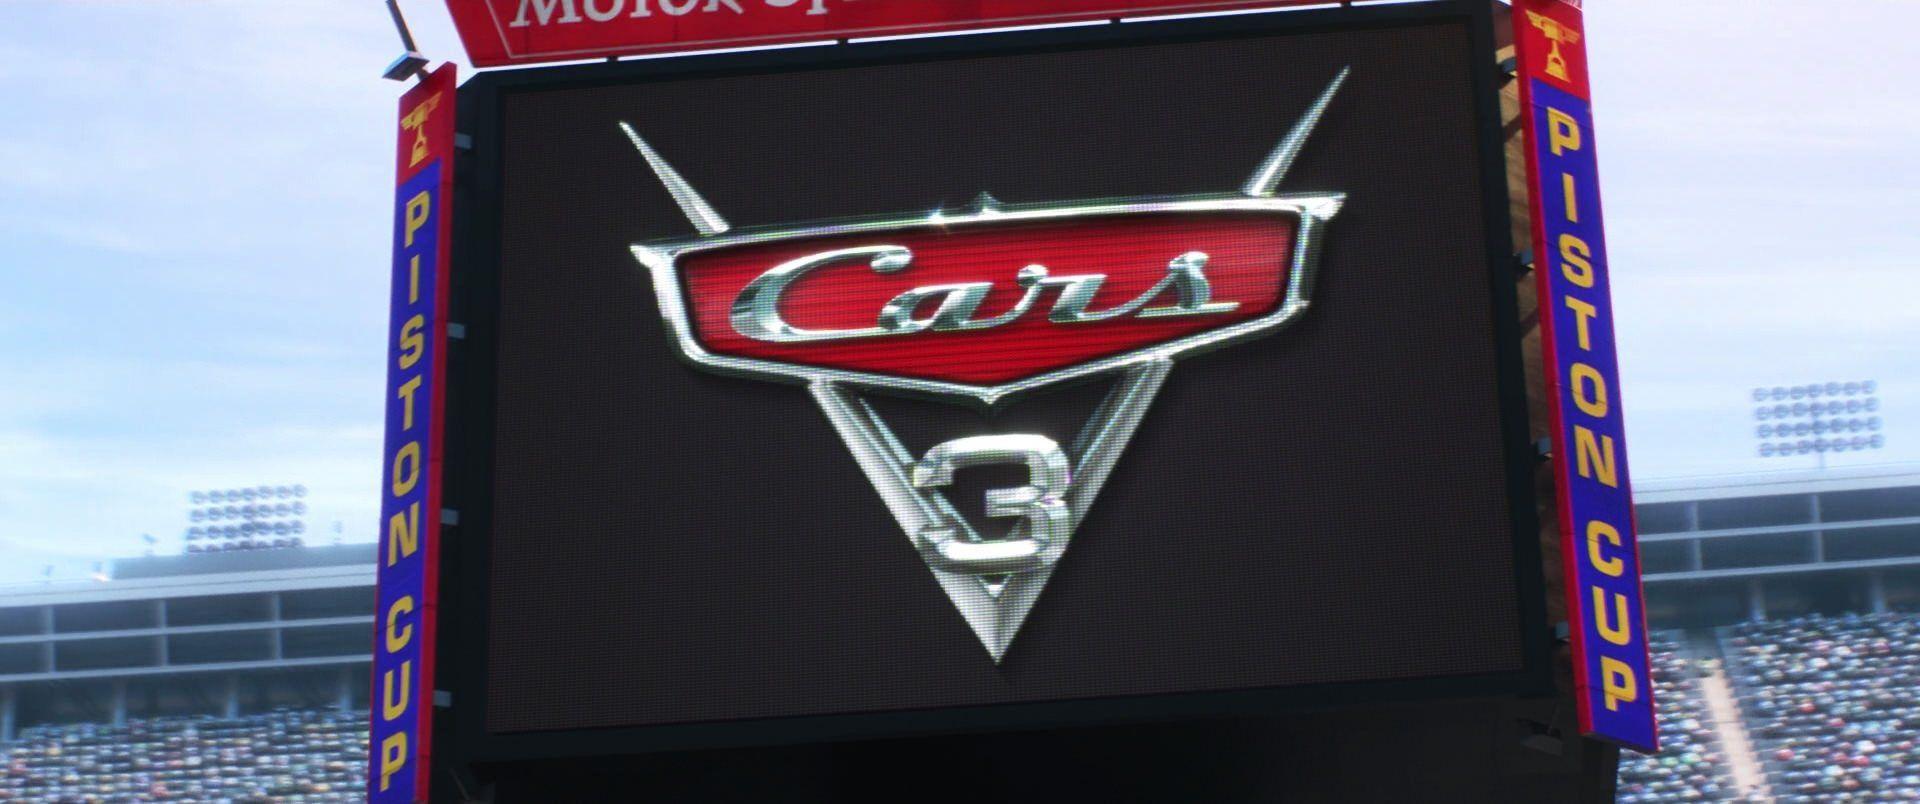 Disney Cars 3 Logo - Cars 3 (2017)